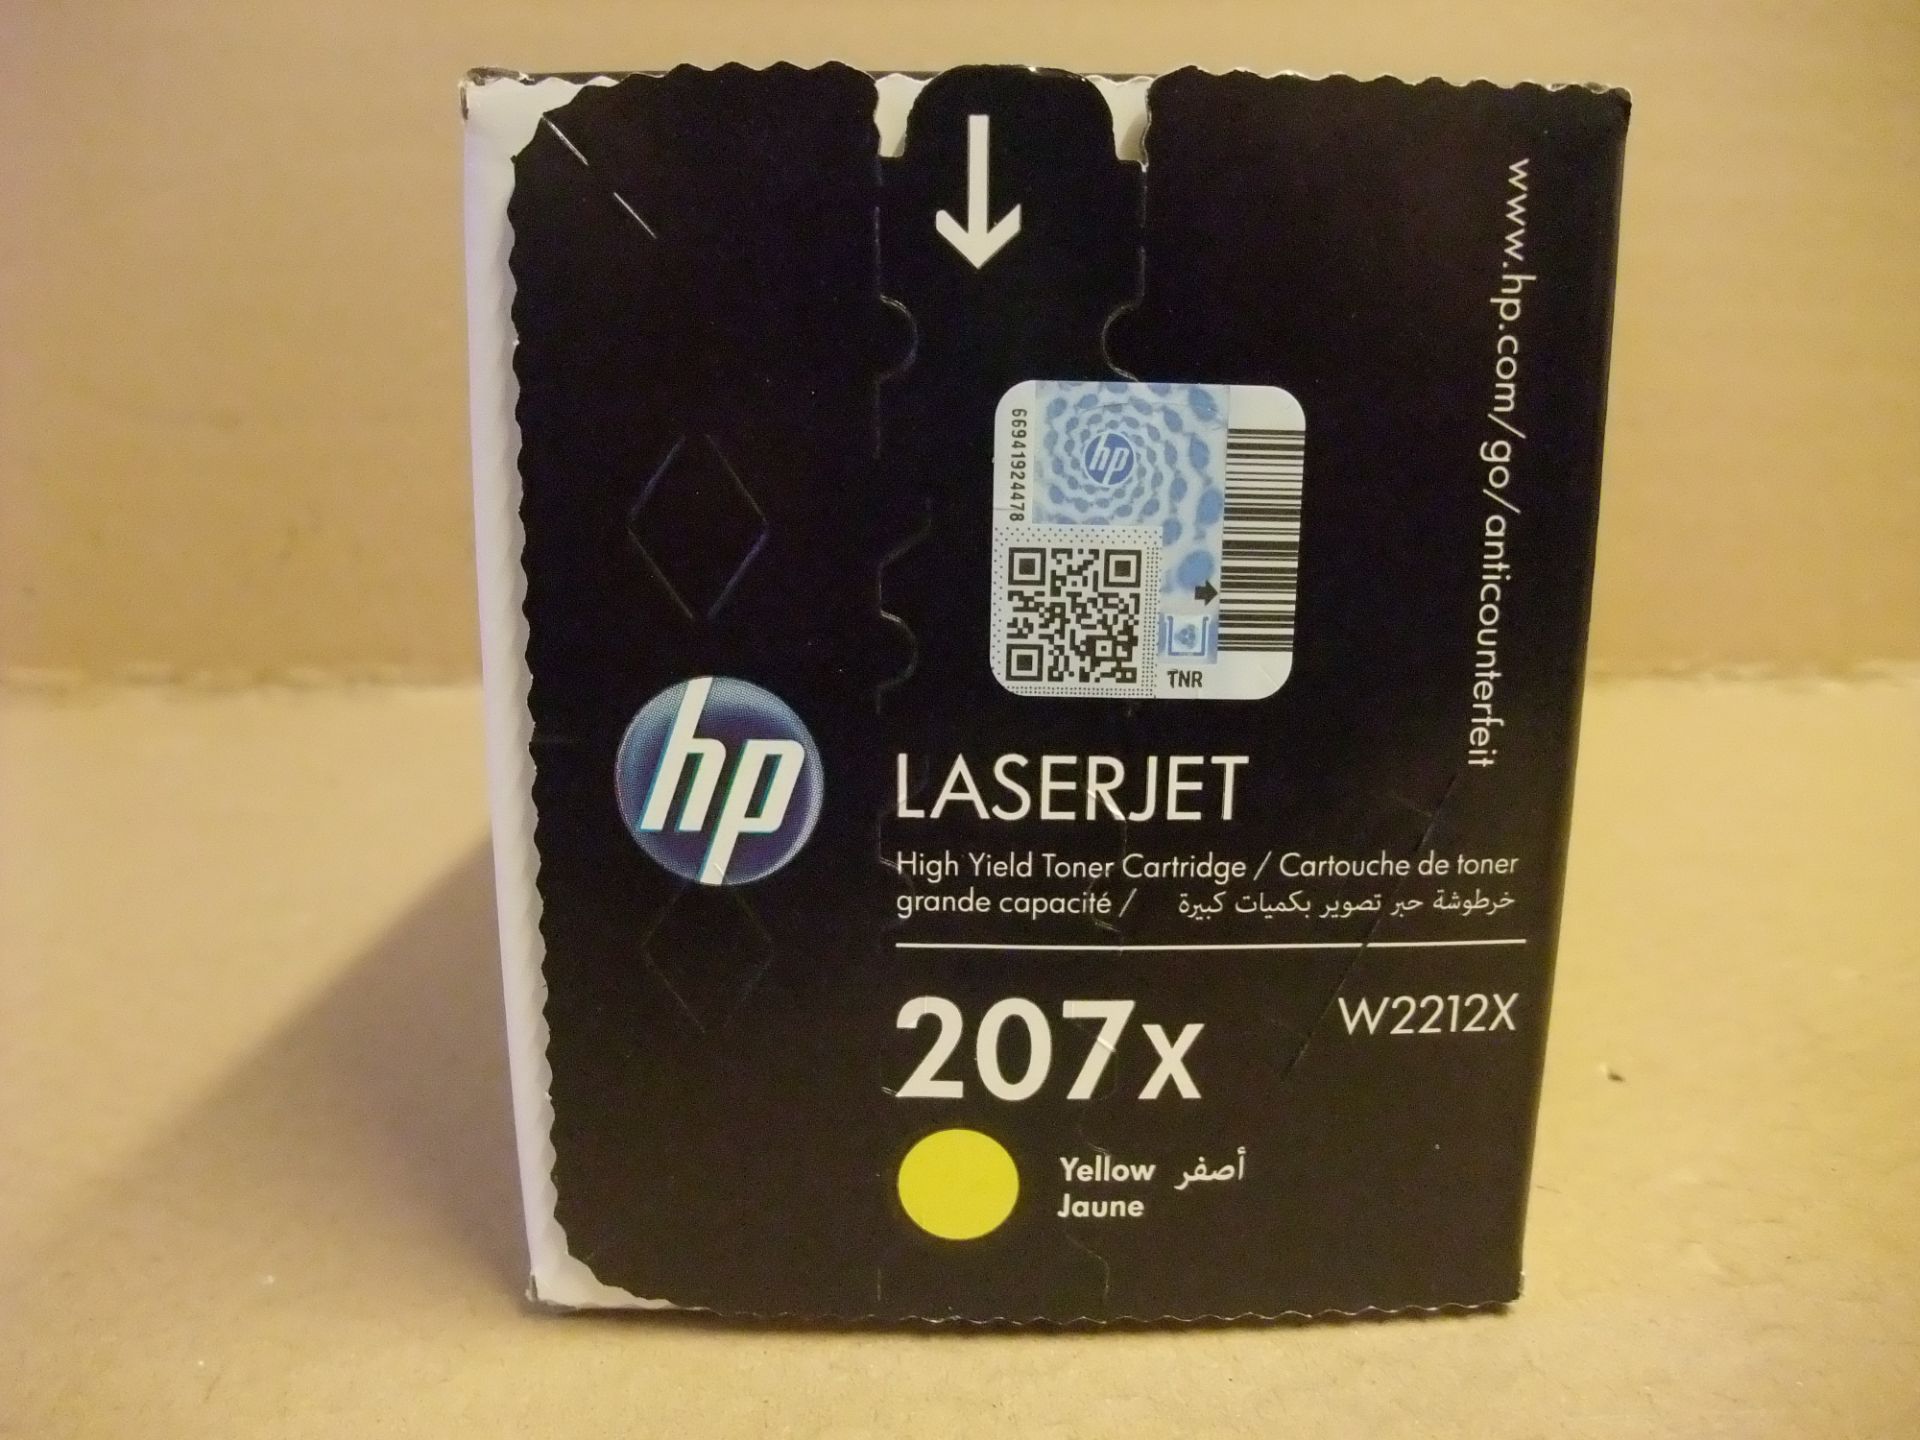 HP LaserJet Toner 207x (W2212X) - YELLOW - for HP LaserJet Pro M255, MFP M282, MFP M283Please read - Image 3 of 3